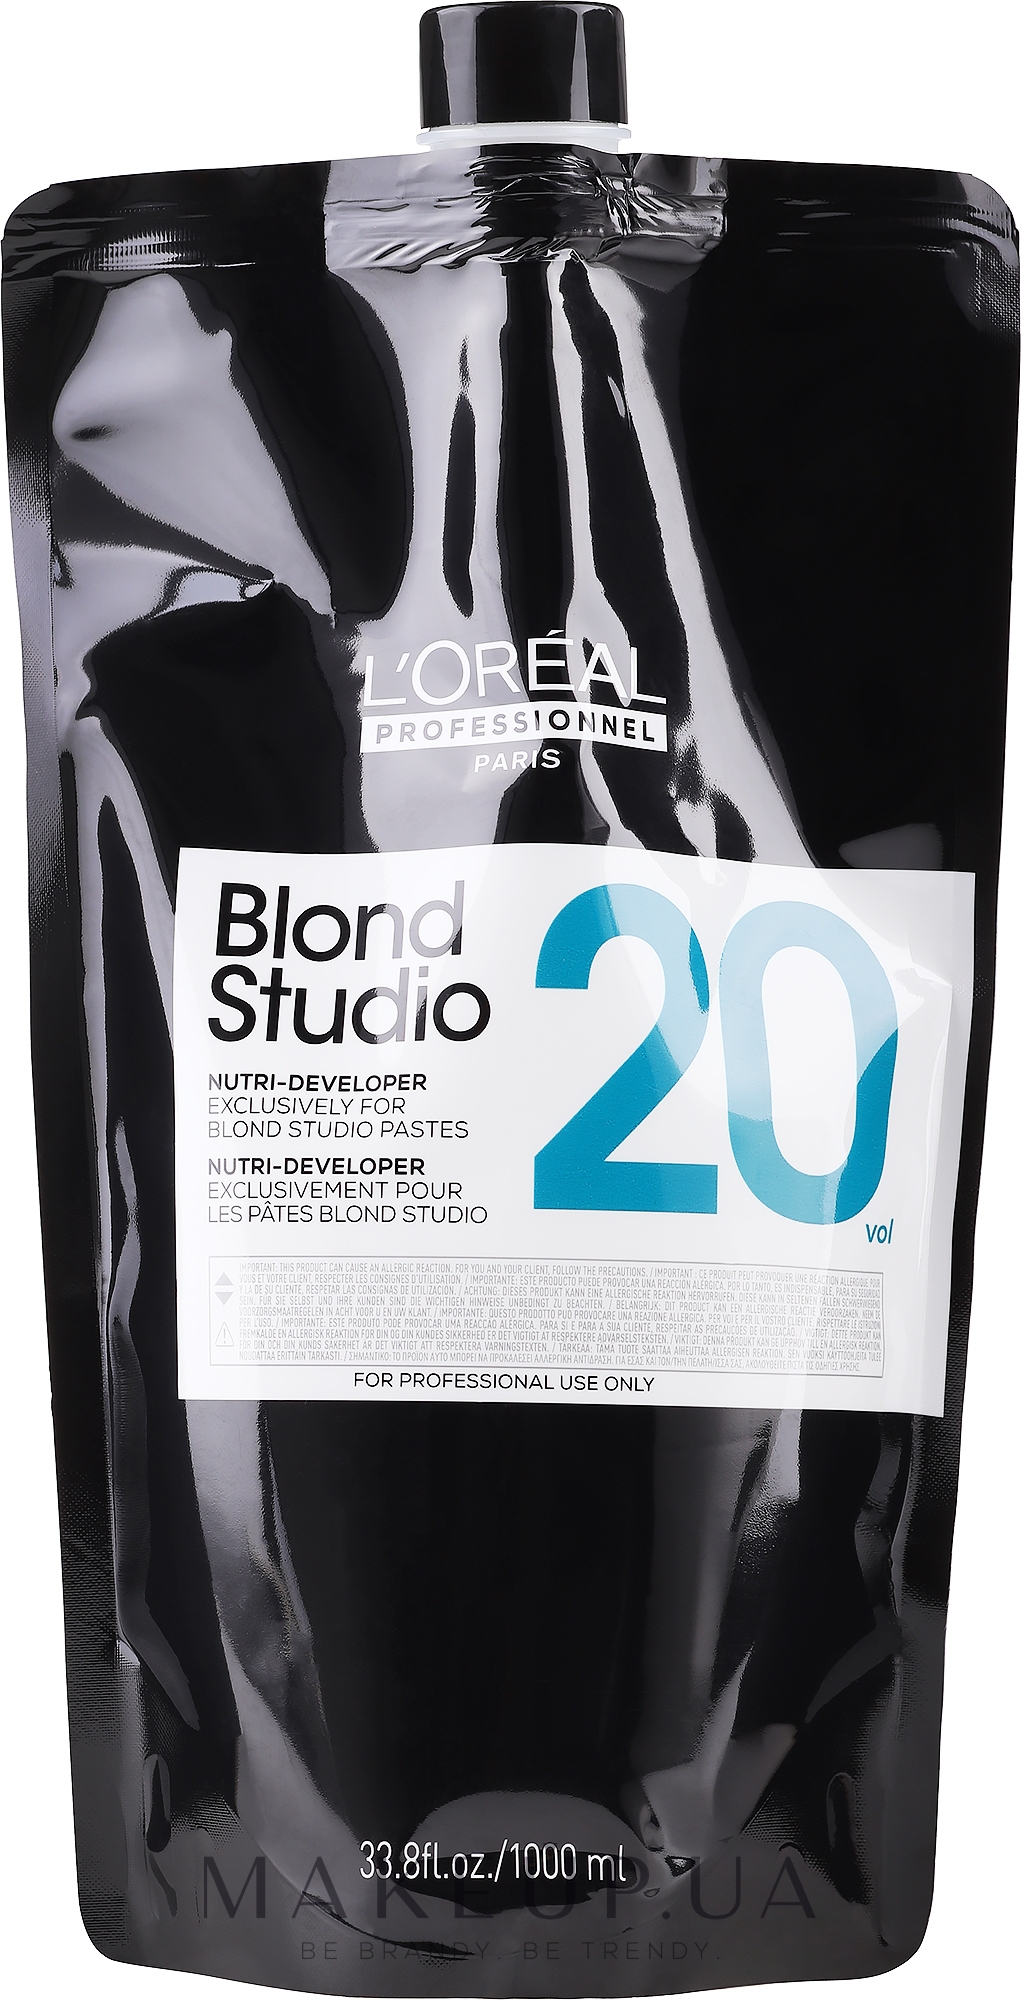 Питательный кремовый проявитель для осветленных волос 6% - L'Oreal Professionnel Blond Studio Creamy Nutri-Developer Vol.20 — фото 1000ml